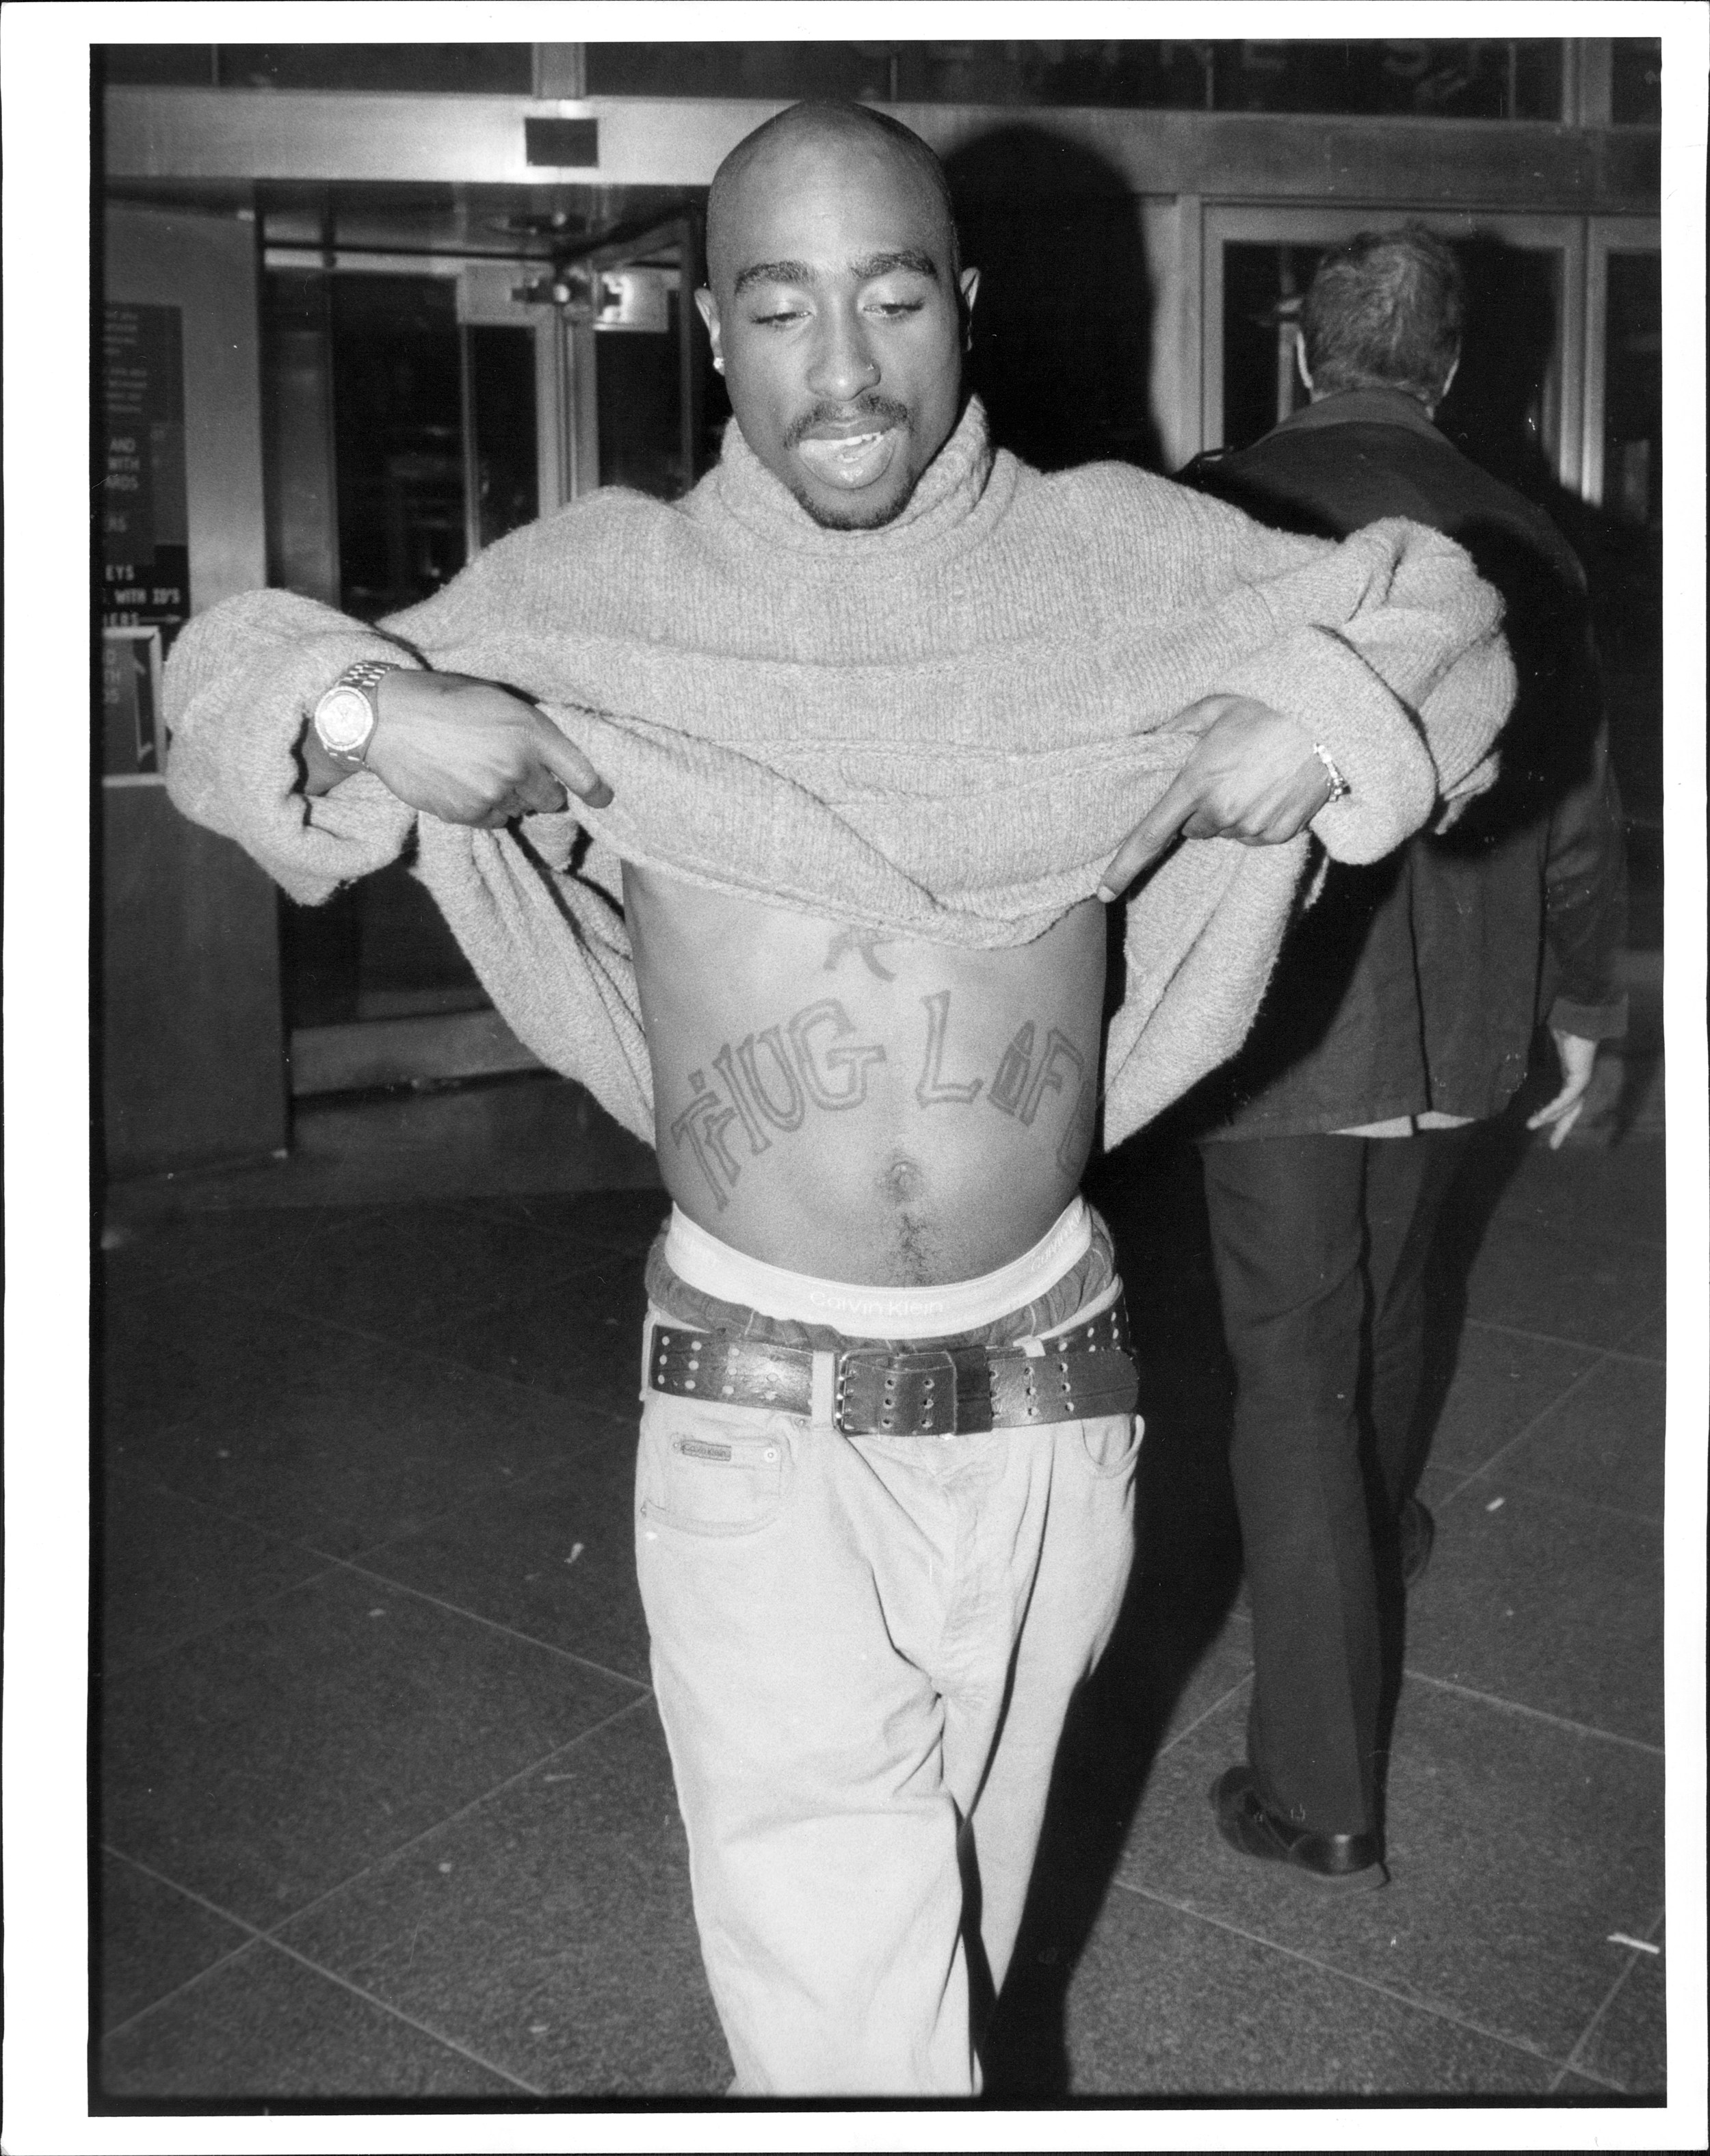 Tupac và chiếc hình "Thug Life" thương hiệu